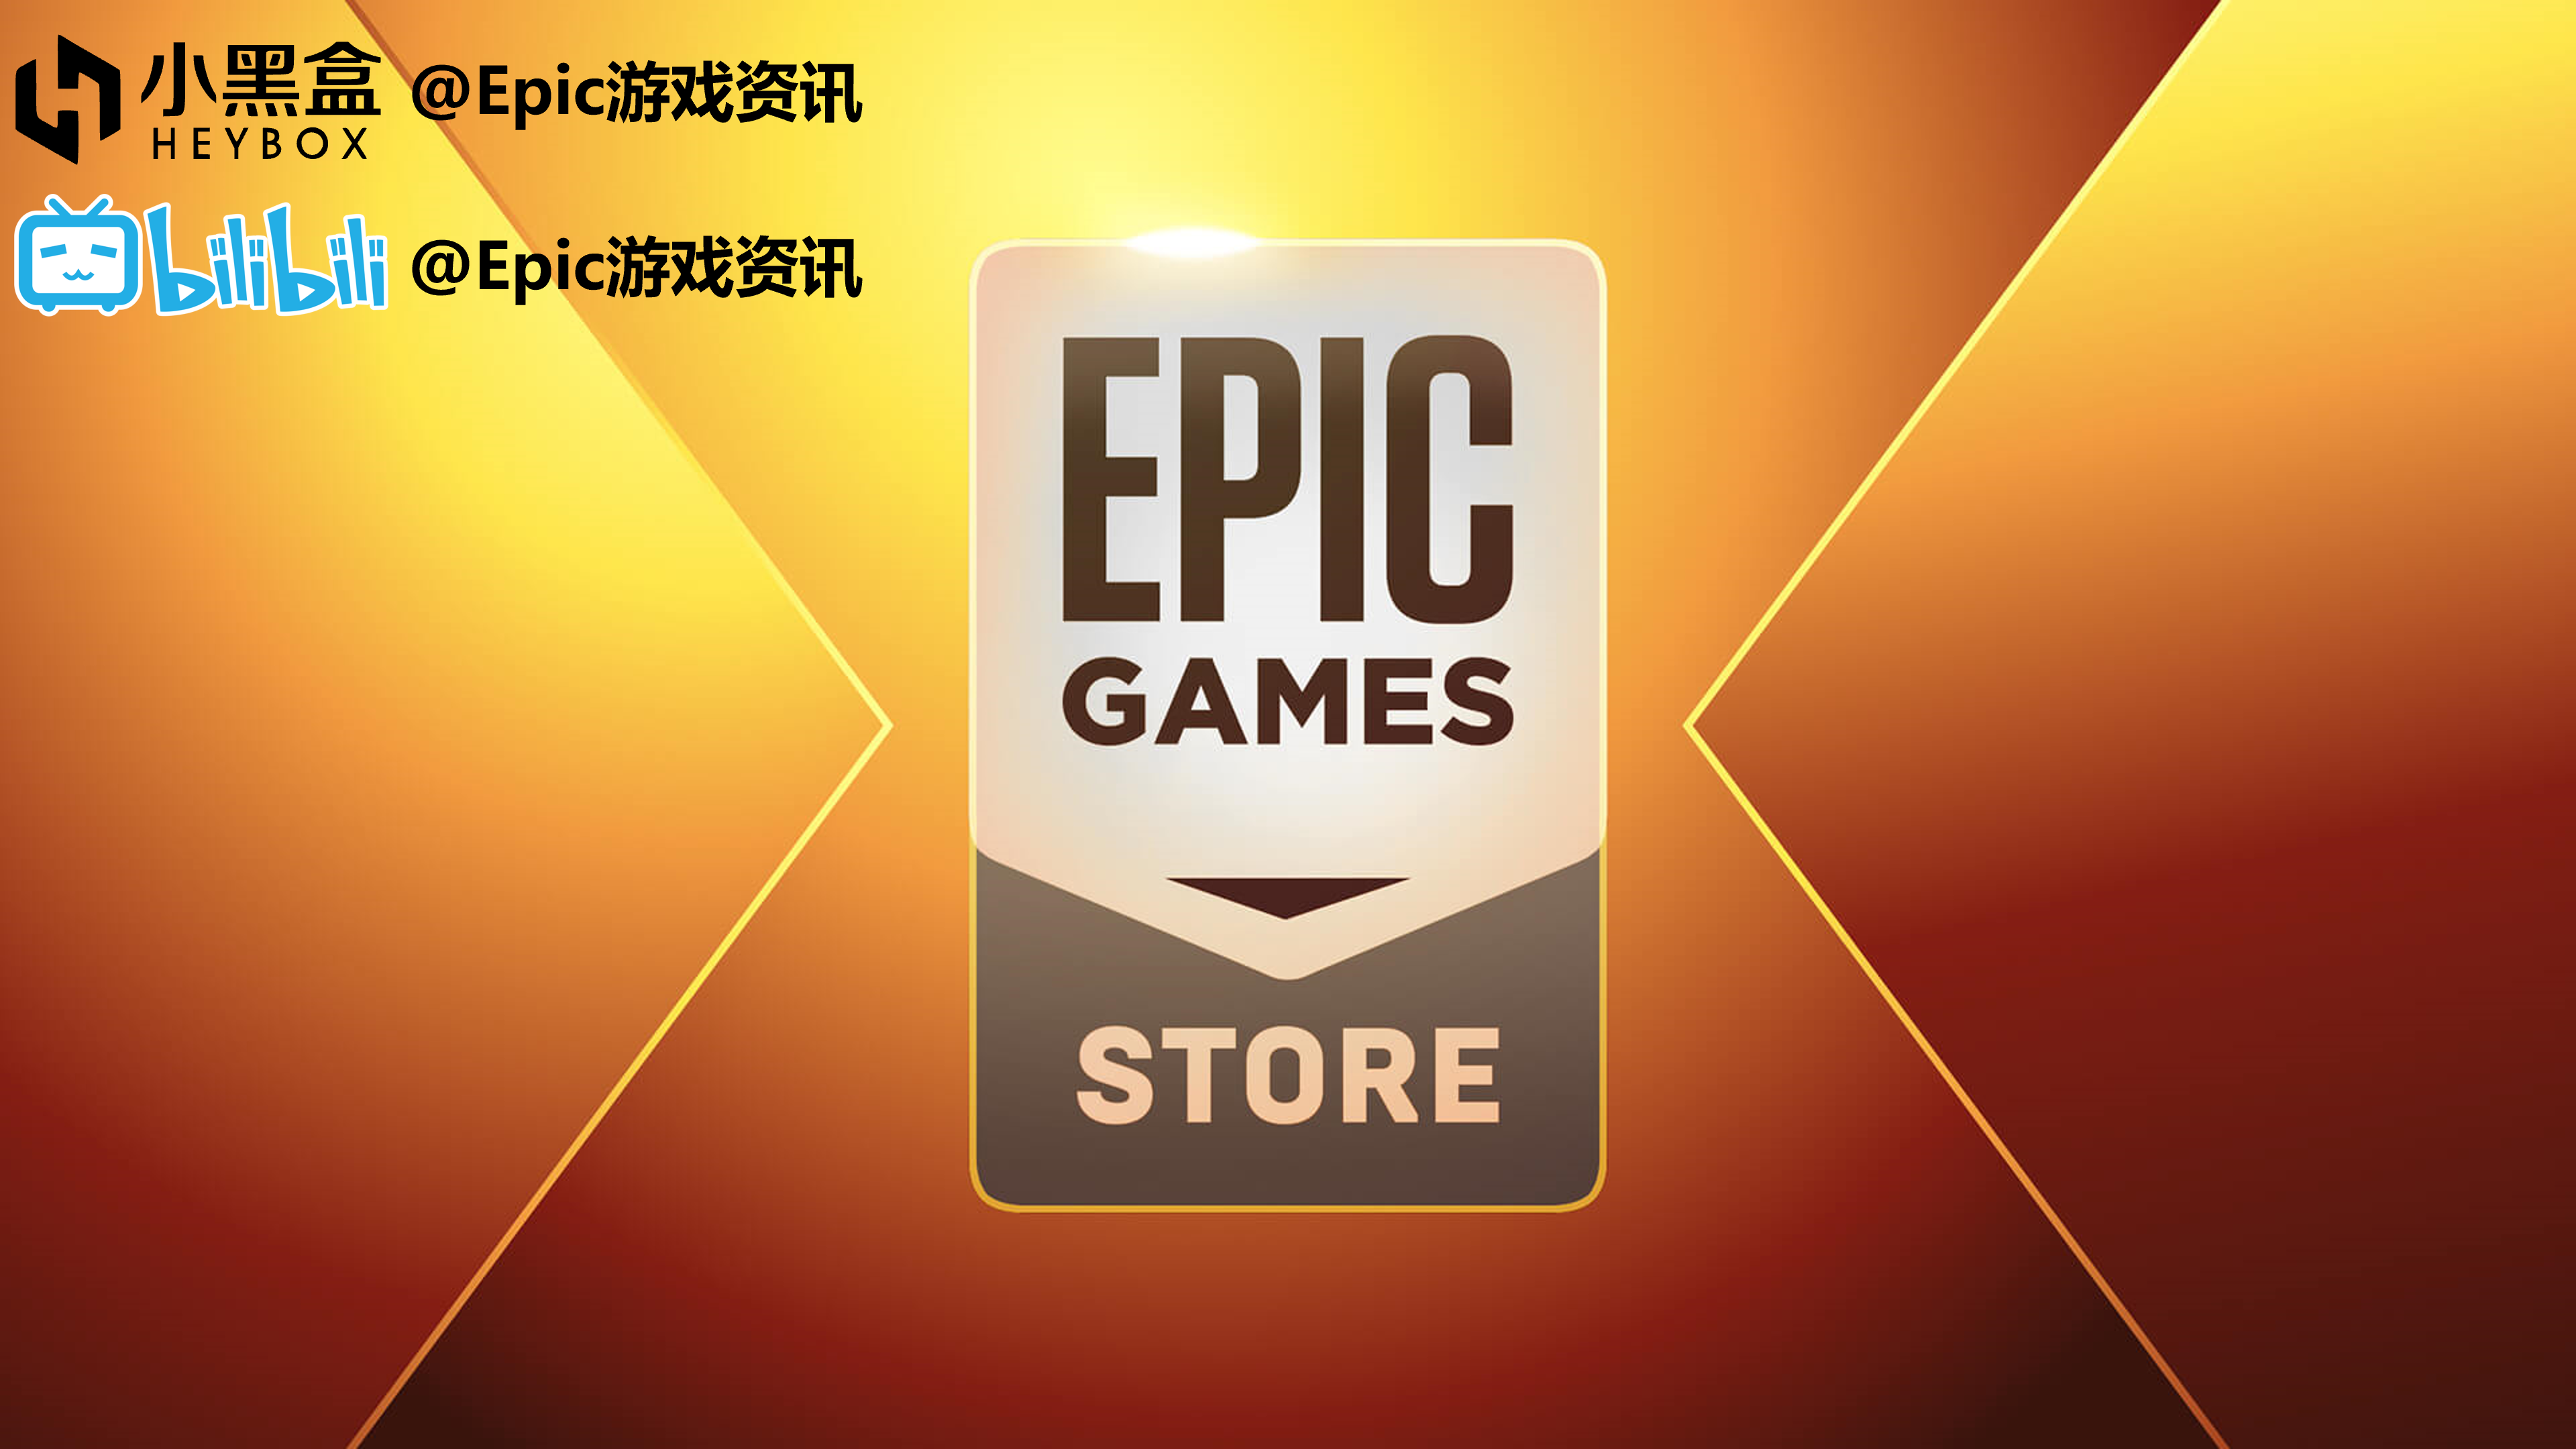 【遊戲綜合】Epic每日資訊【育碧+1,GTAOL合約更新,暗影火炬城Epic發售】2021.12.15(193)